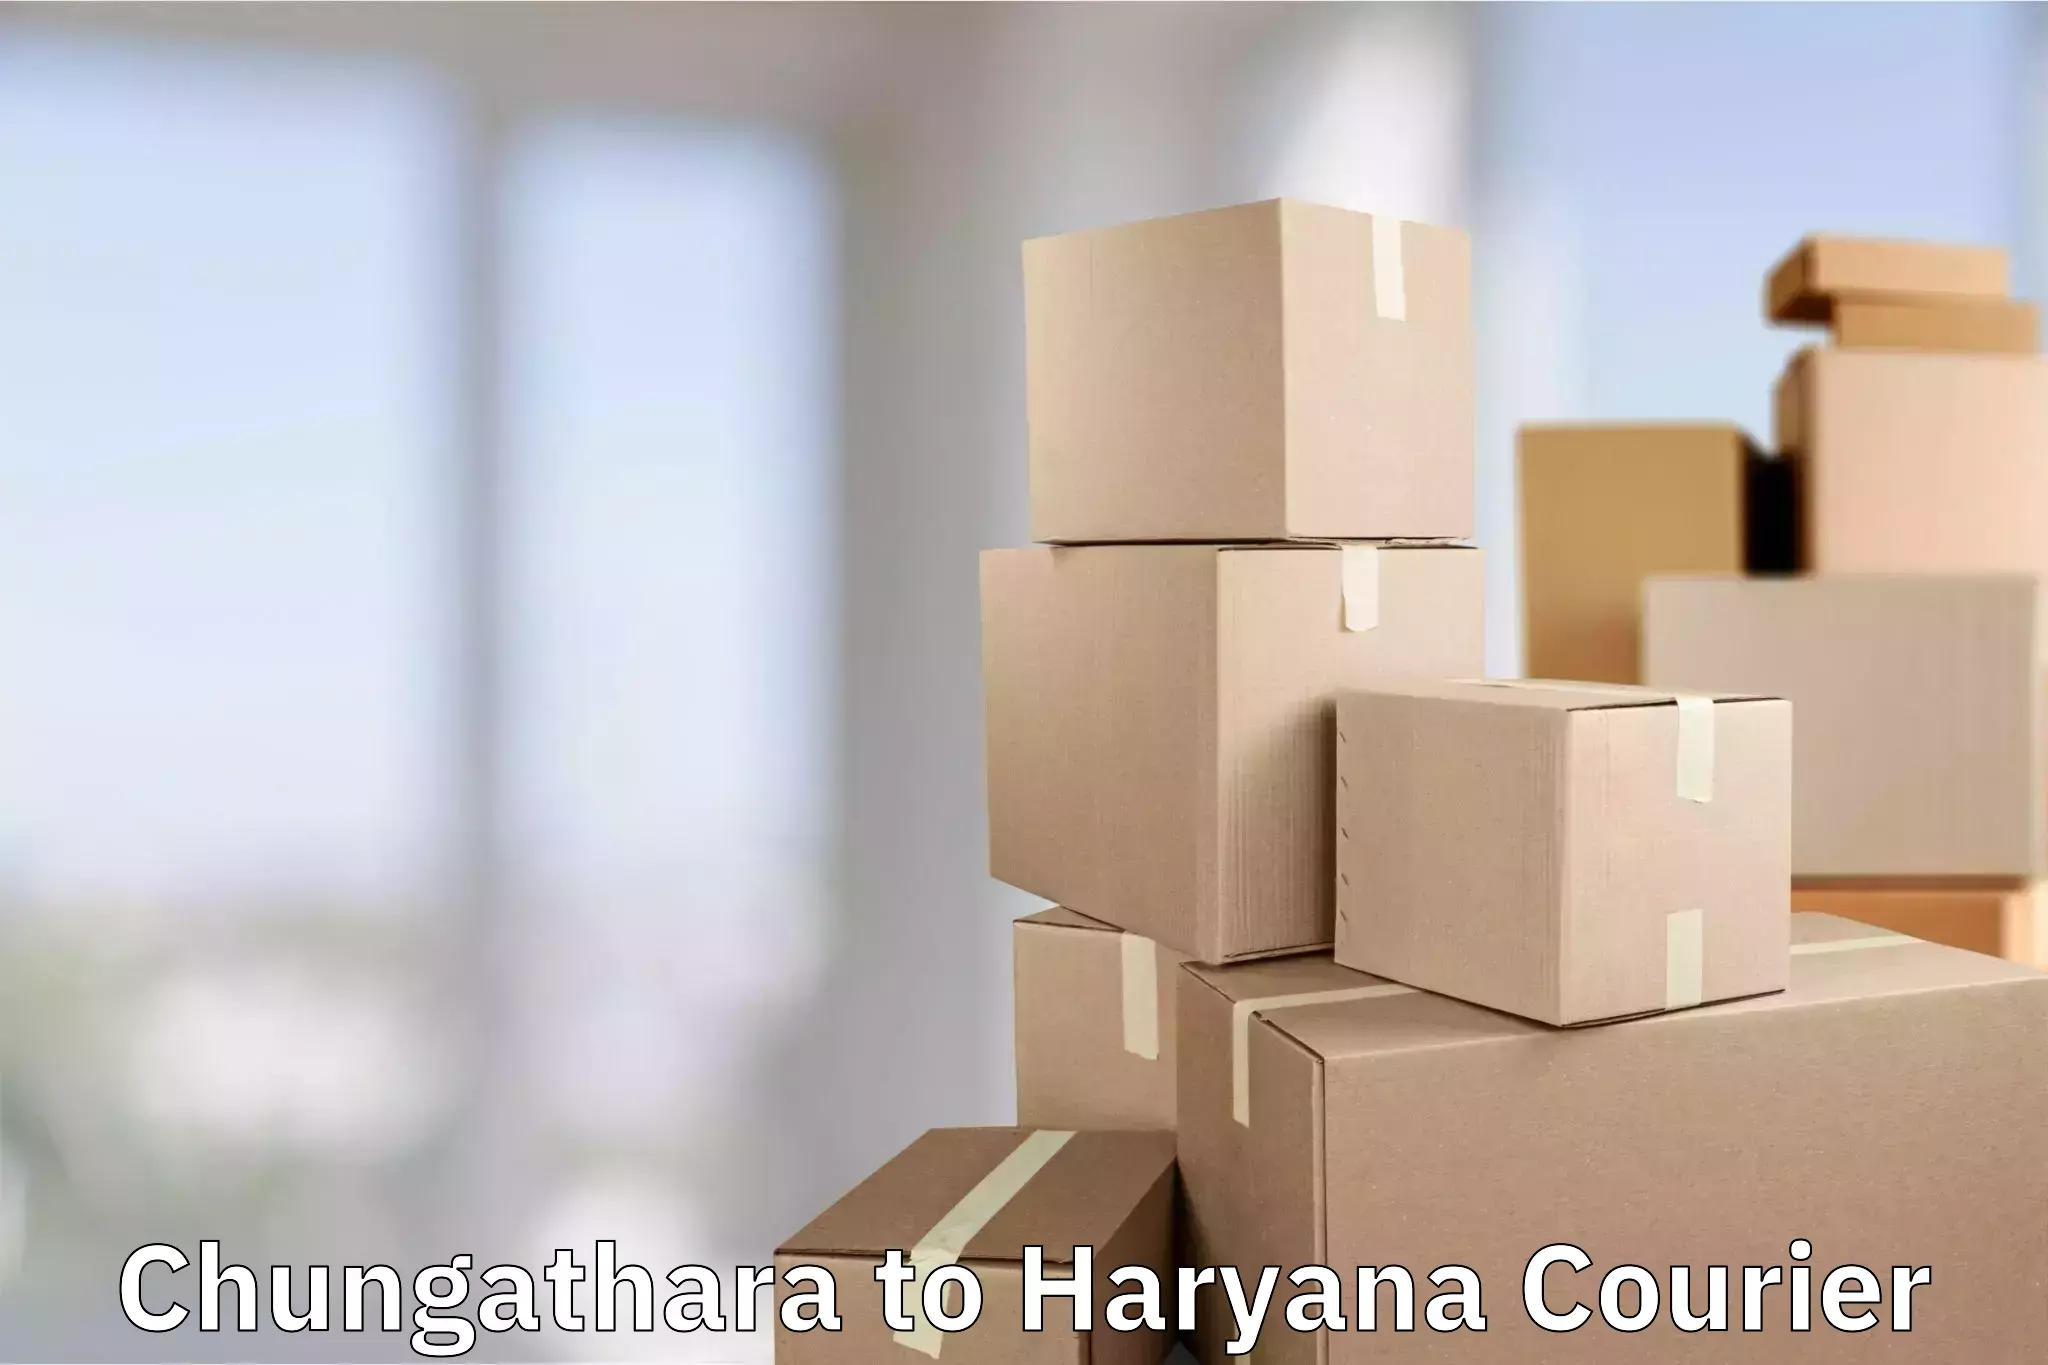 Baggage shipping schedule Chungathara to Chaudhary Charan Singh Haryana Agricultural University Hisar